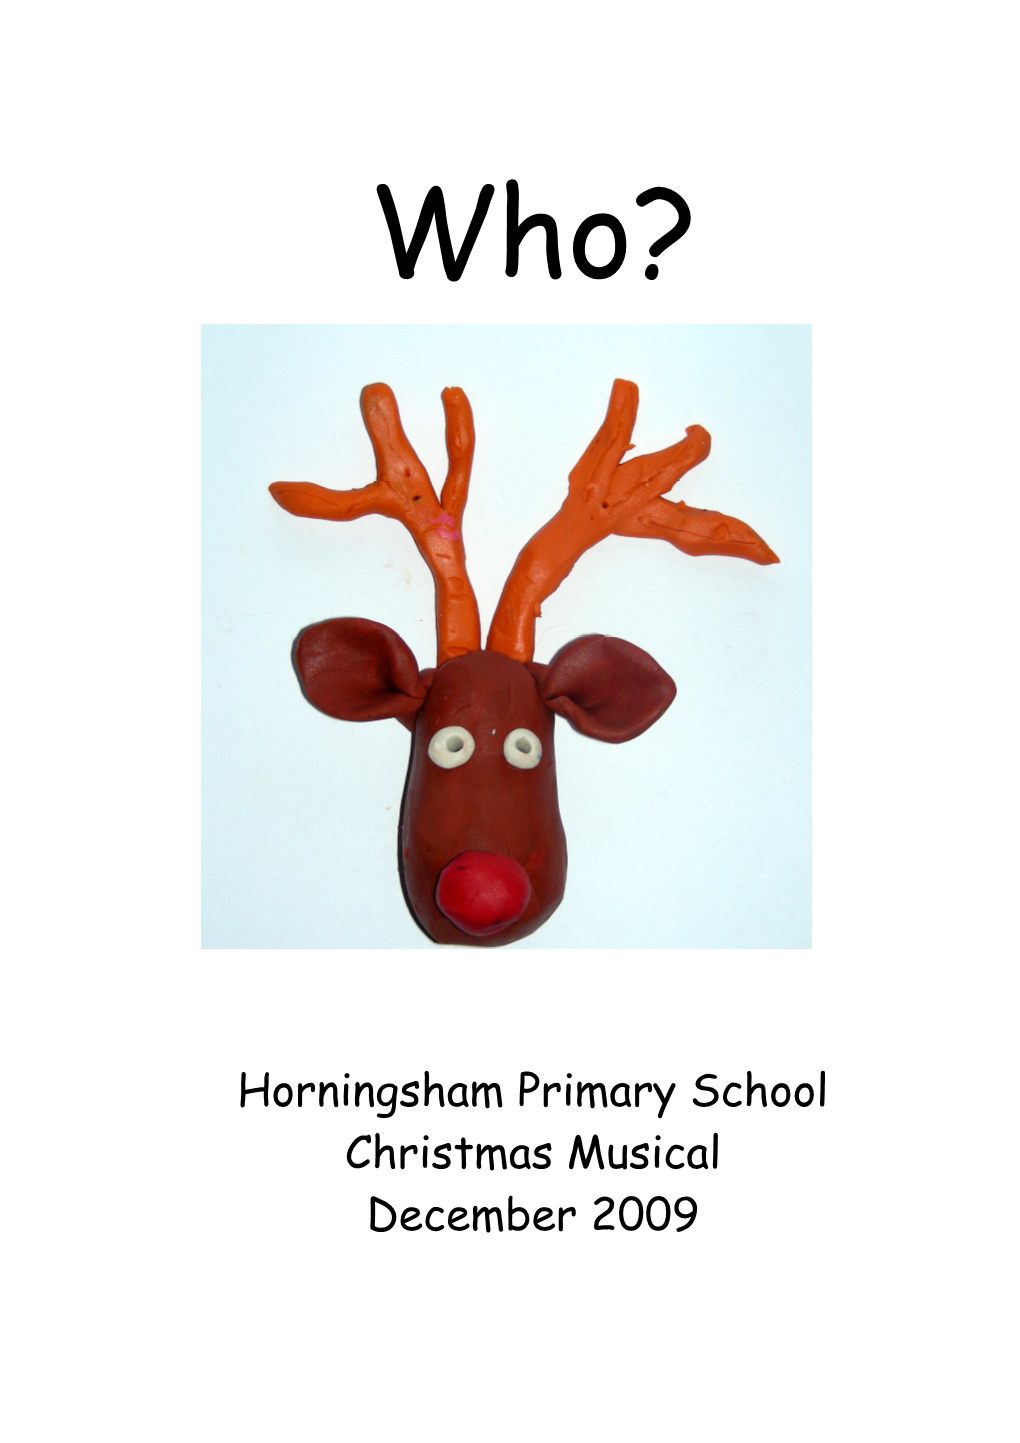 Horningsham Primary School Christmas Musical December 2009